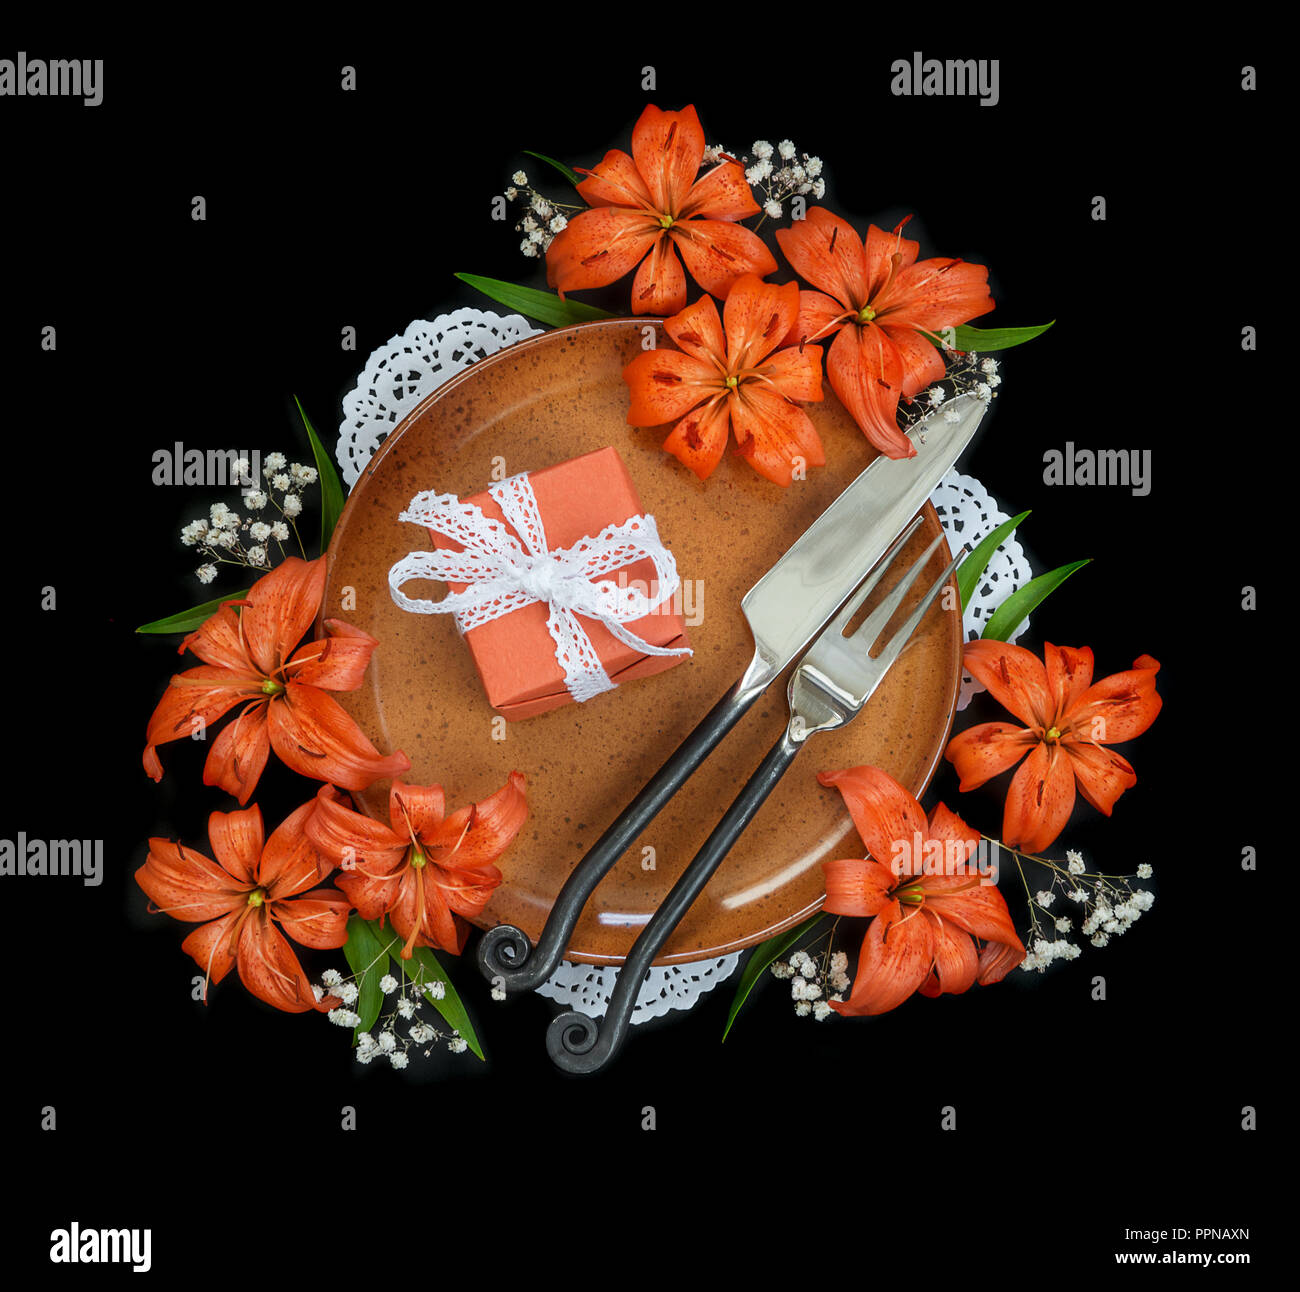 Piastra in terracotta decorata con gigli arancio fiori, confezione regalo legato con il bianco in pizzo e nastro esclusiva posate forgiato isolato su un nero backgroun Foto Stock